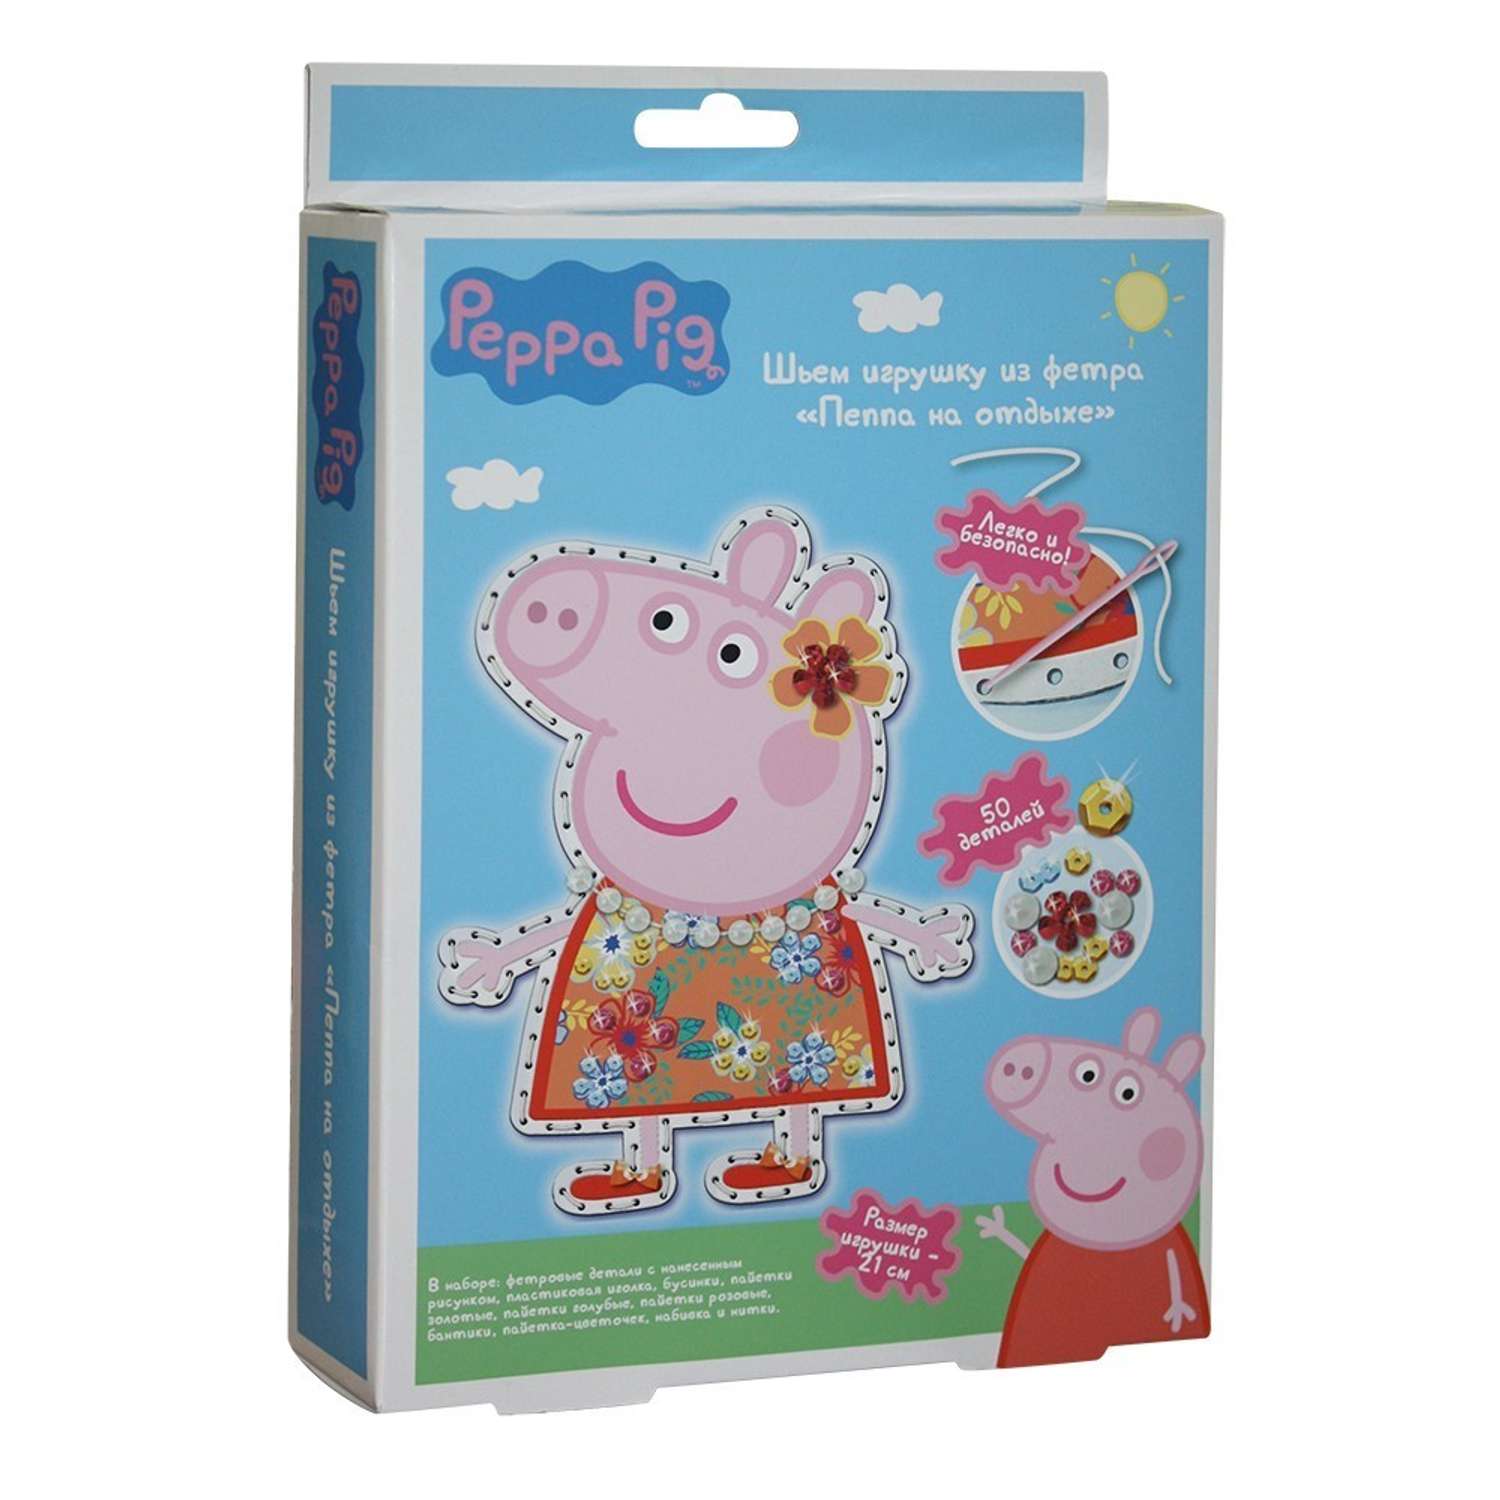 Набор Peppa Pig шьем игрушку из фетра Пеппа на отдыхе - фото 1